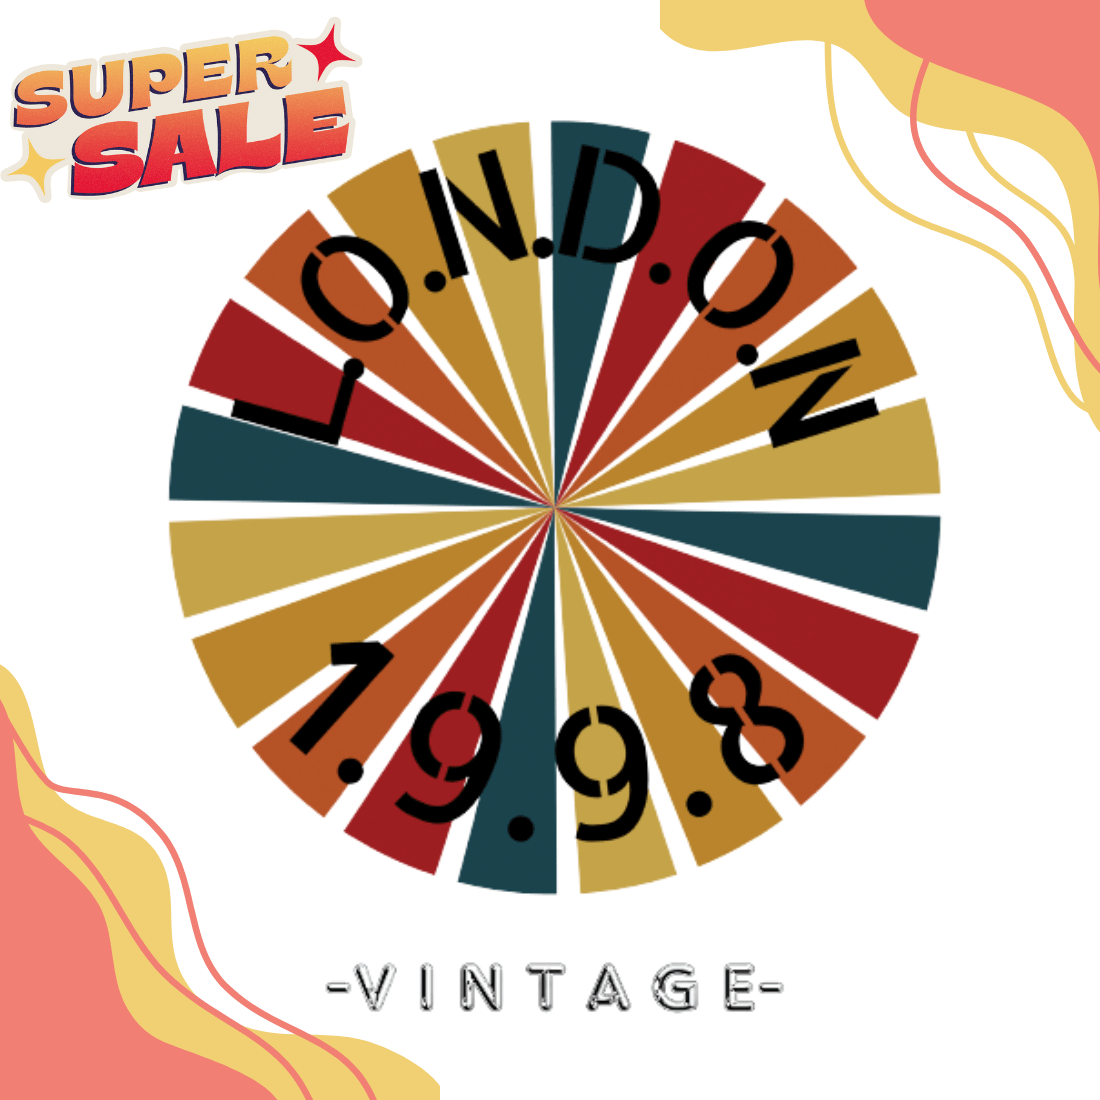 London Vintage t-shirt designs preview image.